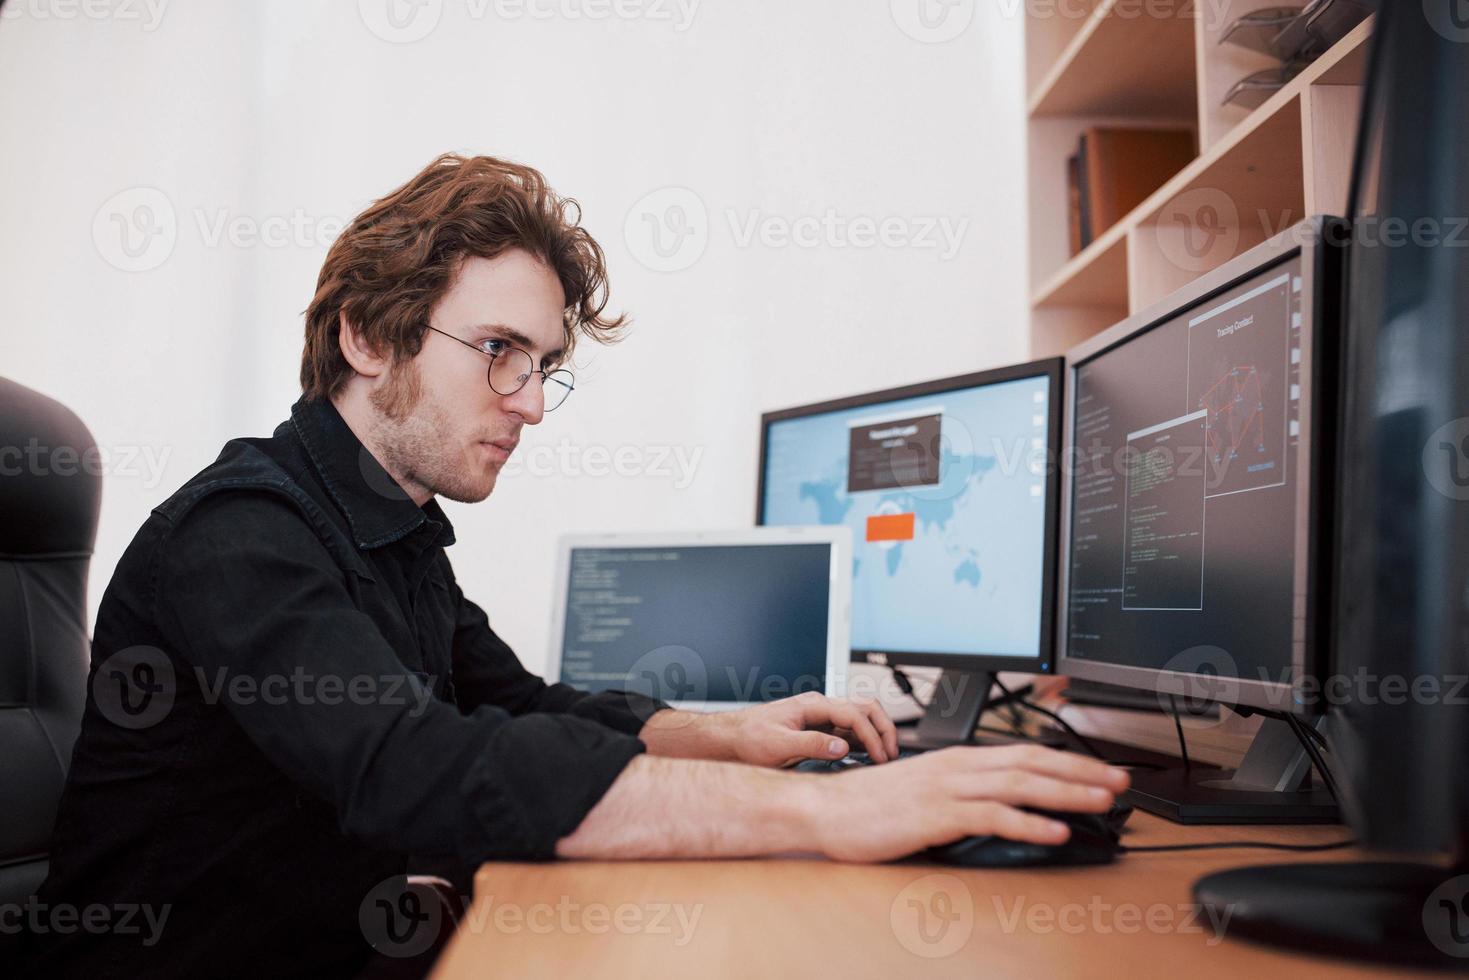 mannelijke programmeur werkt op desktopcomputer met veel monitoren op kantoor in softwareontwikkelingsbedrijf. programmeer- en coderingstechnologieën voor websiteontwerp foto